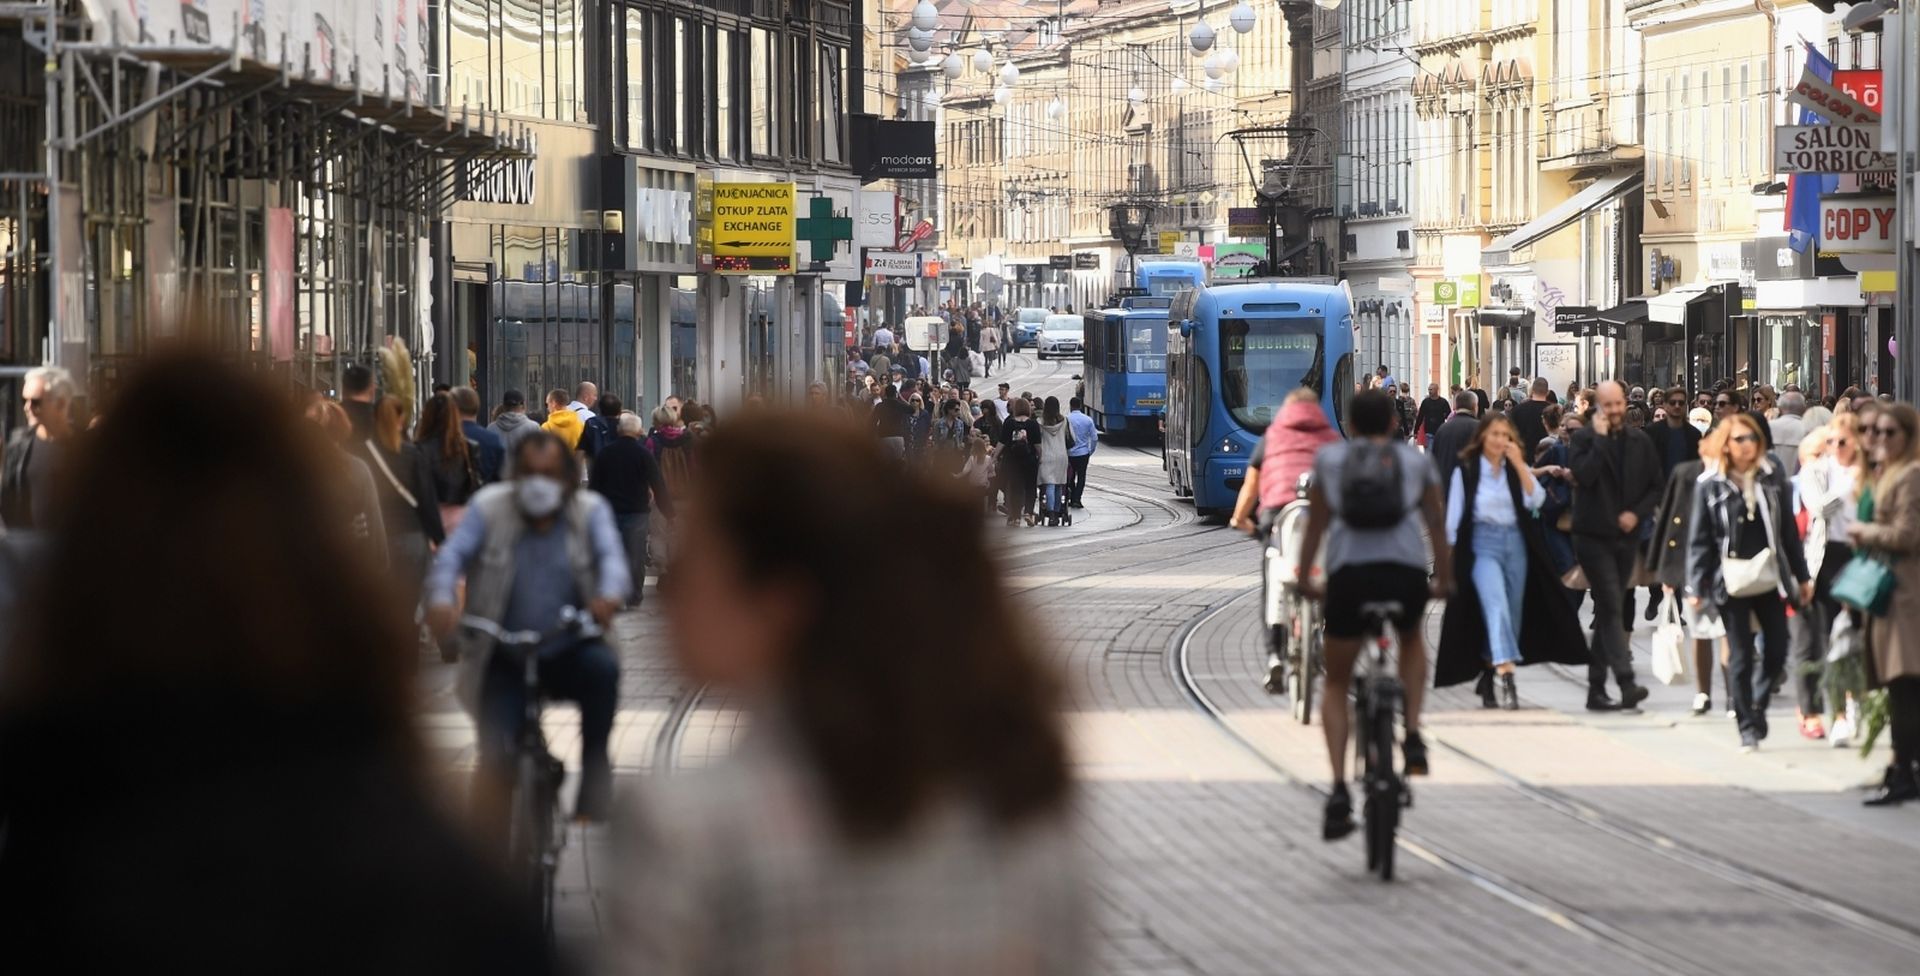 10.10.2020., Zagreb - Pune gradske ulice i ljudi bez maski iako je sve veci broj zarazenih od koronavirusa.
Photo: Marko Lukunic/PIXSELL